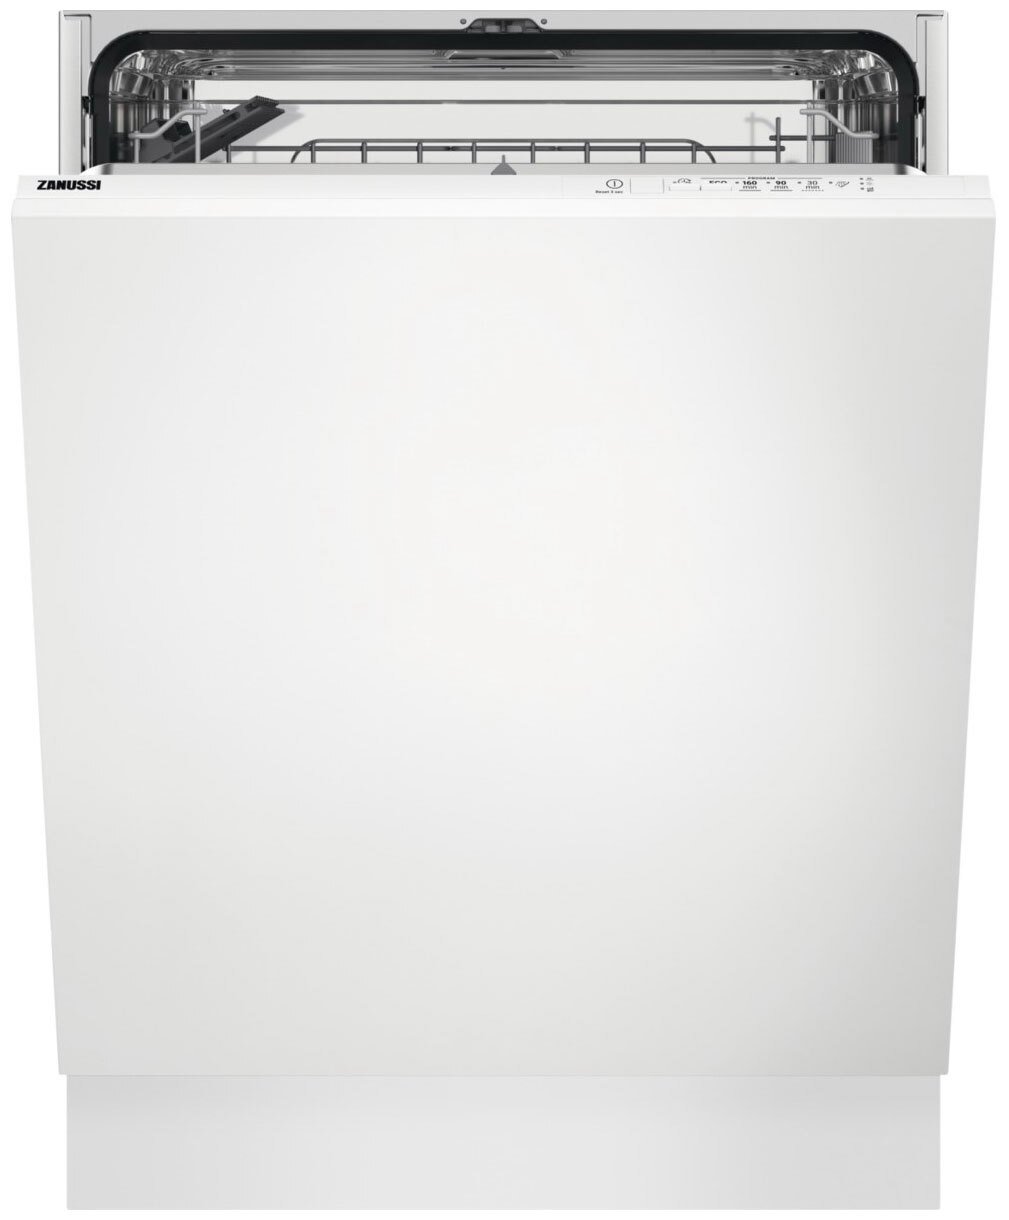 Посудомоечная машина Zanussi ZDLN91511 в интернет-магазине, главное фото